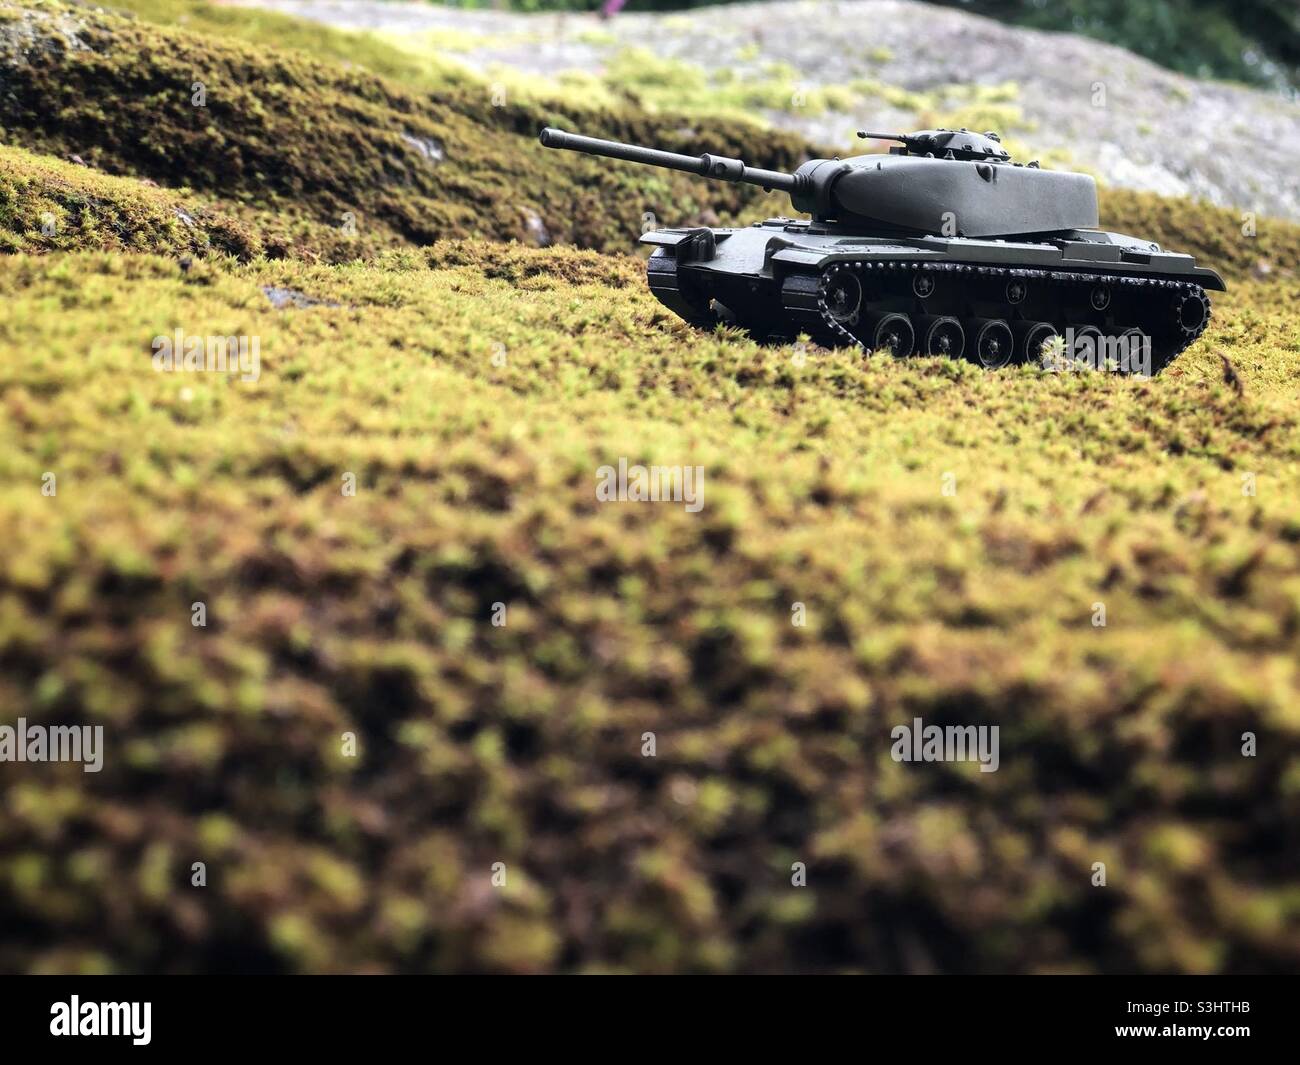 Ein kleiner Panzer der Spielzeugarmee, der auf einem mit Moos bedeckten Felsbrocken aufgestellt ist. Stockfoto